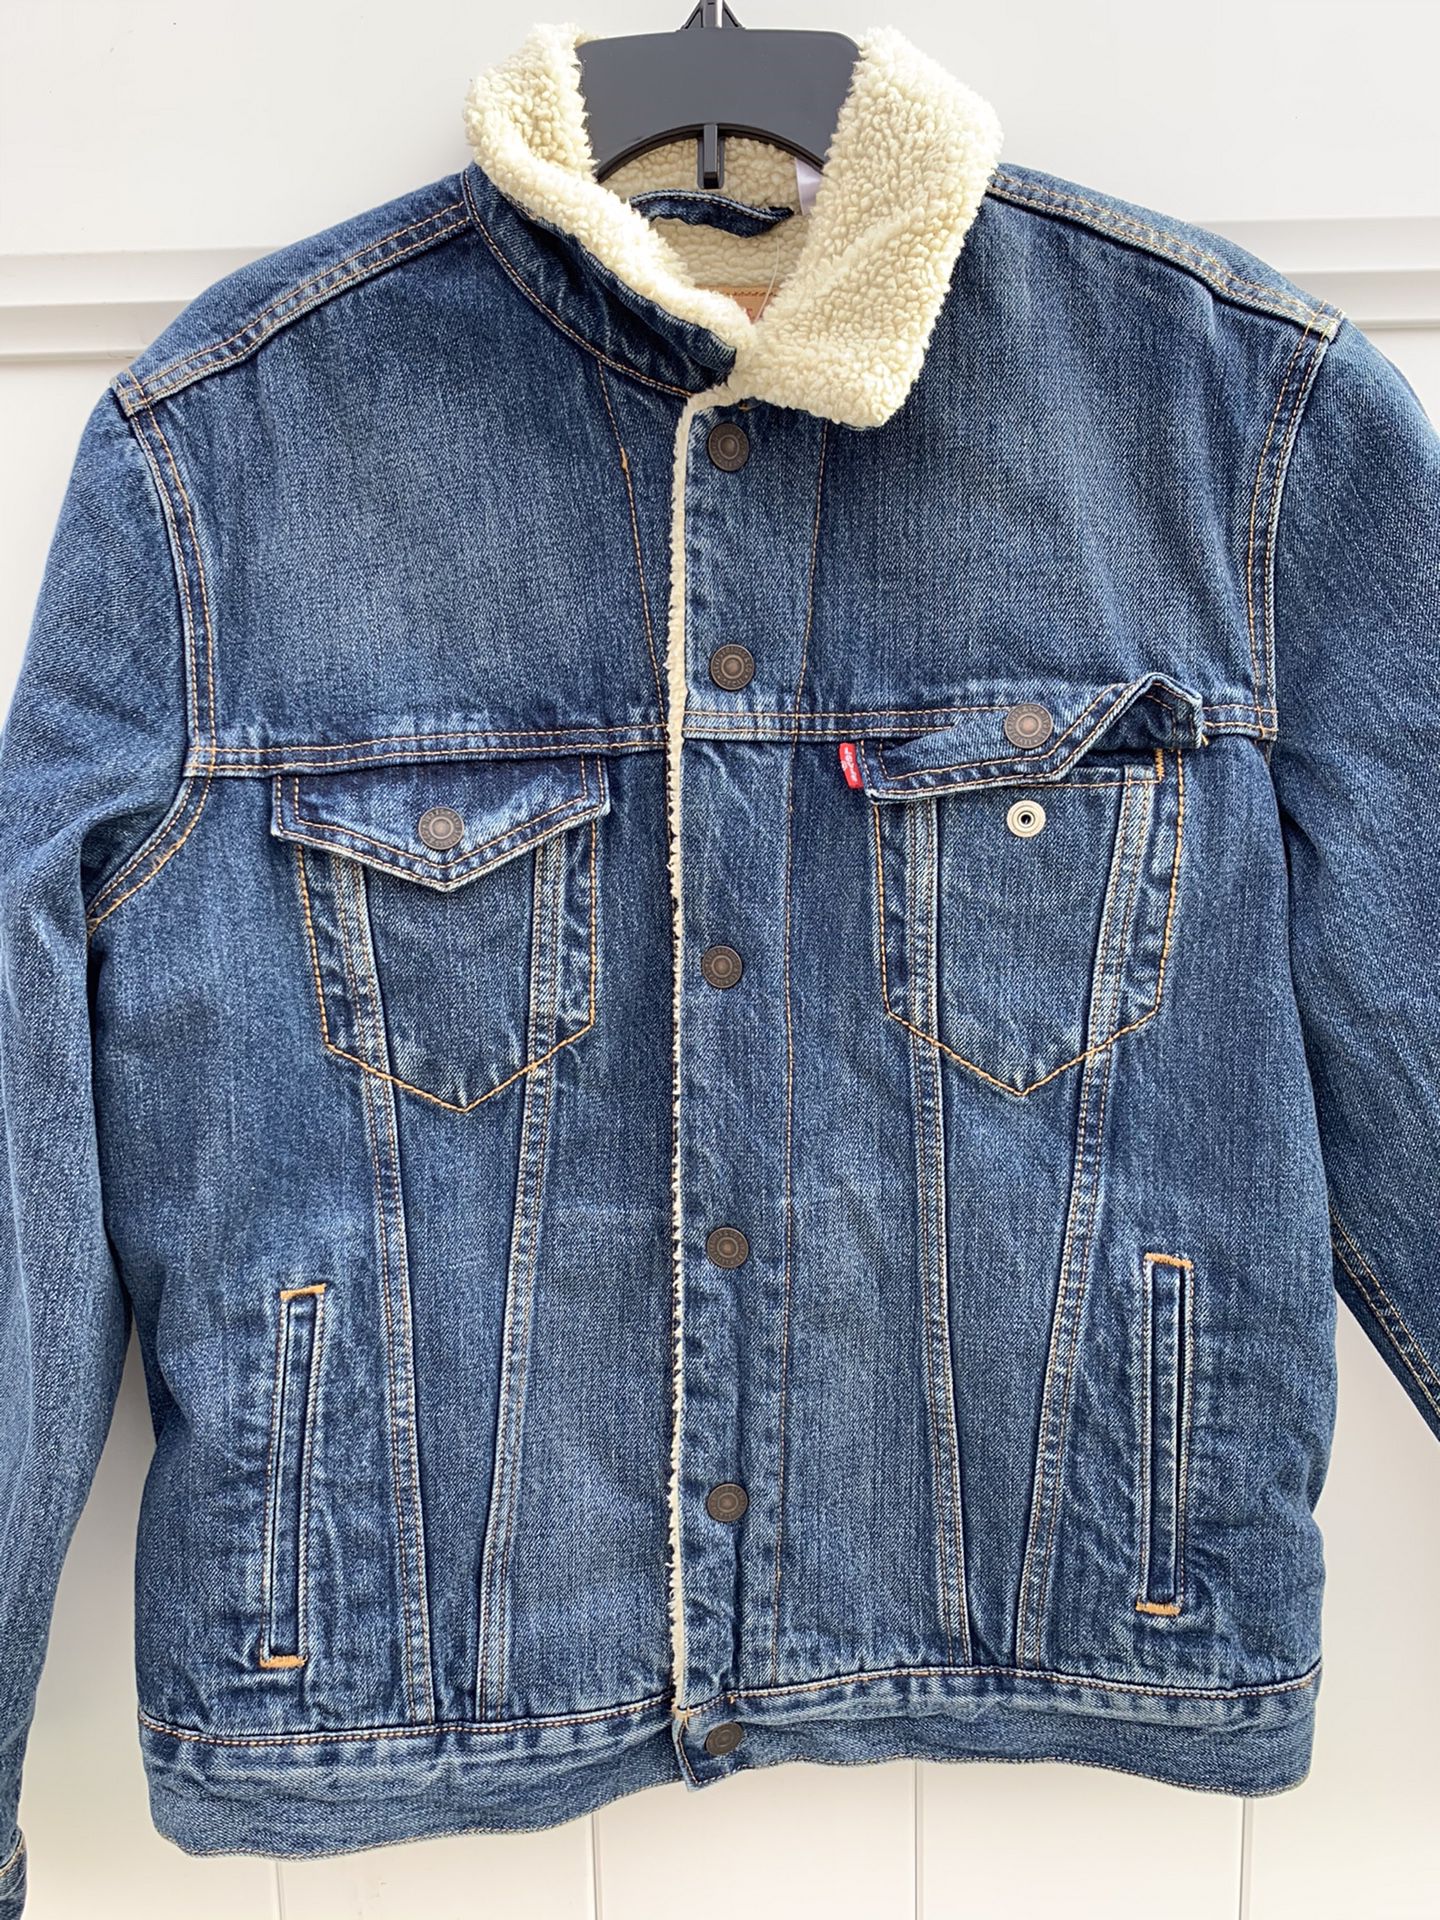 Levi’s jacket